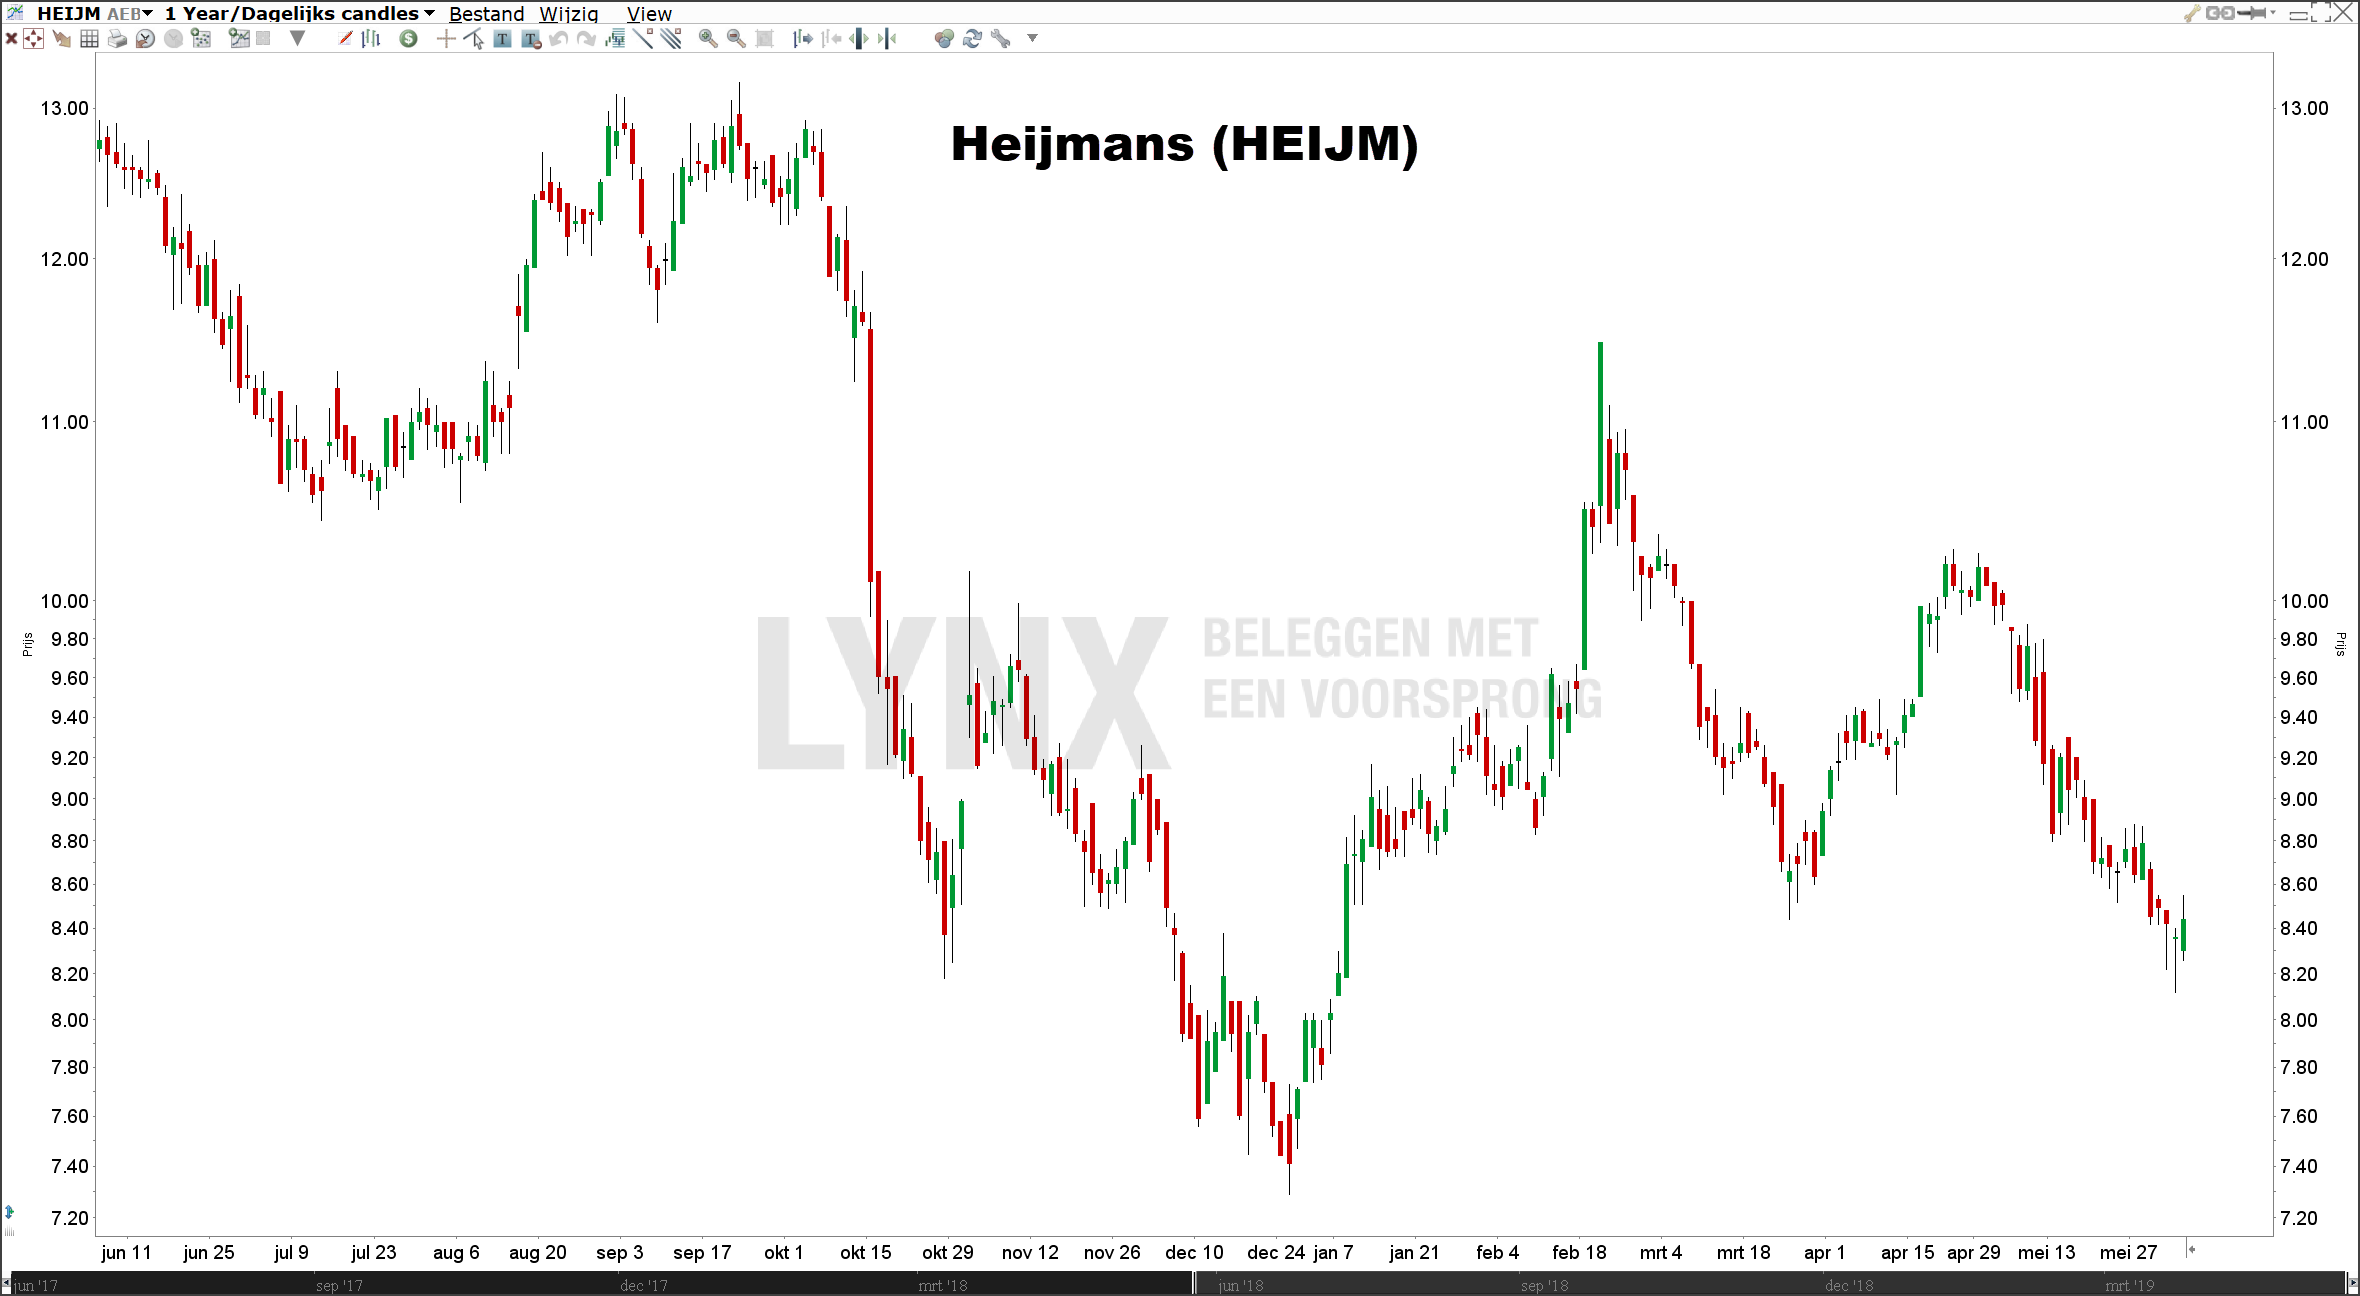 Koers small cap aandelen Heijmans